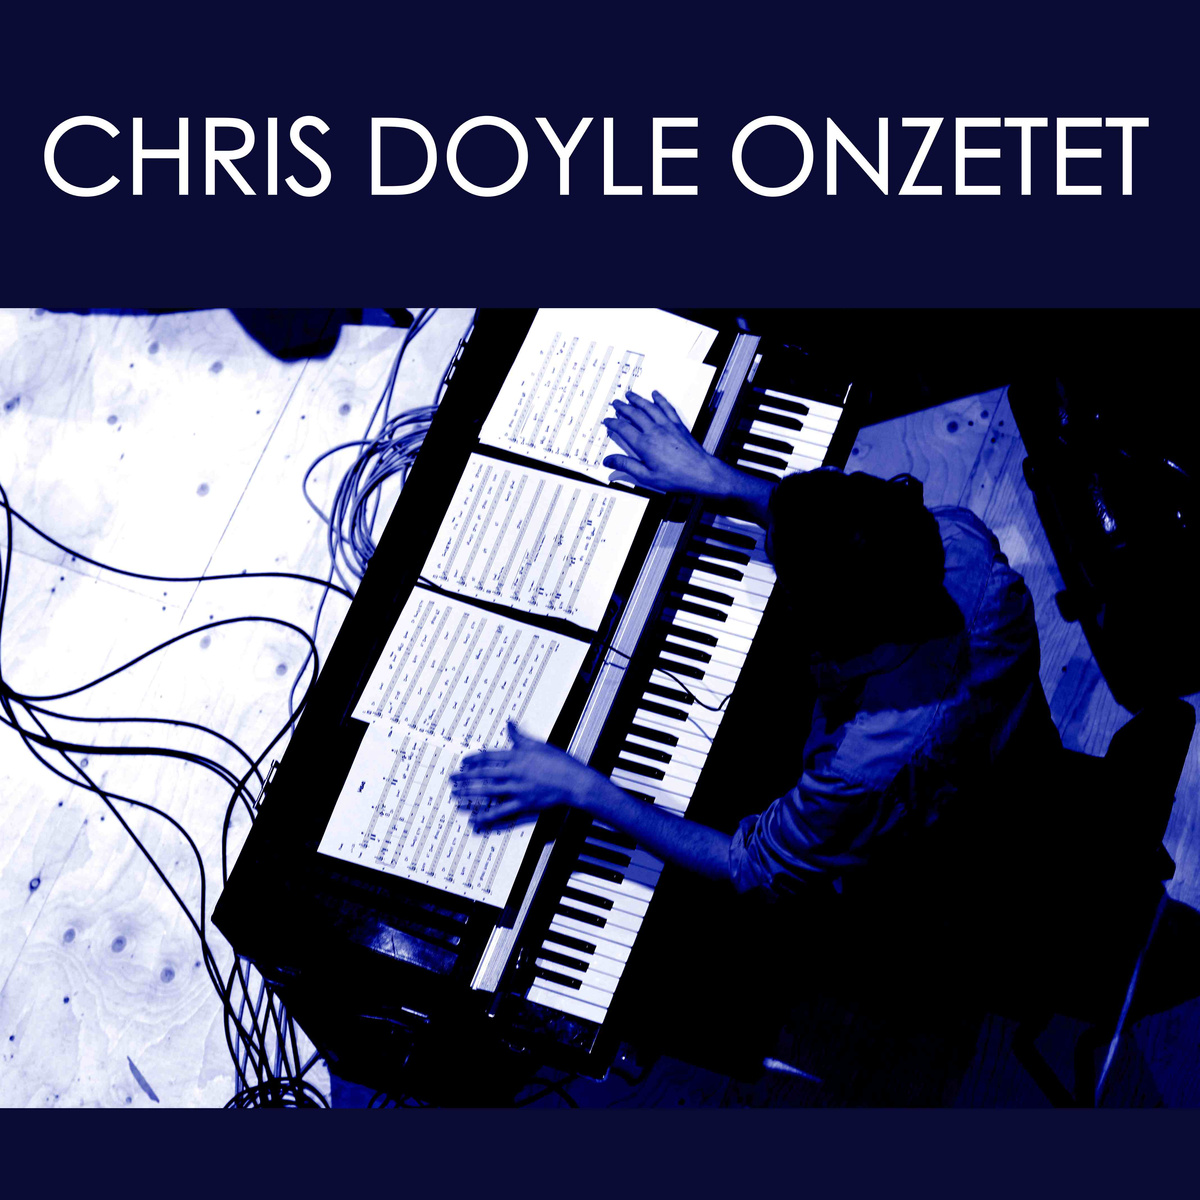 Chris Doyle Onzetet